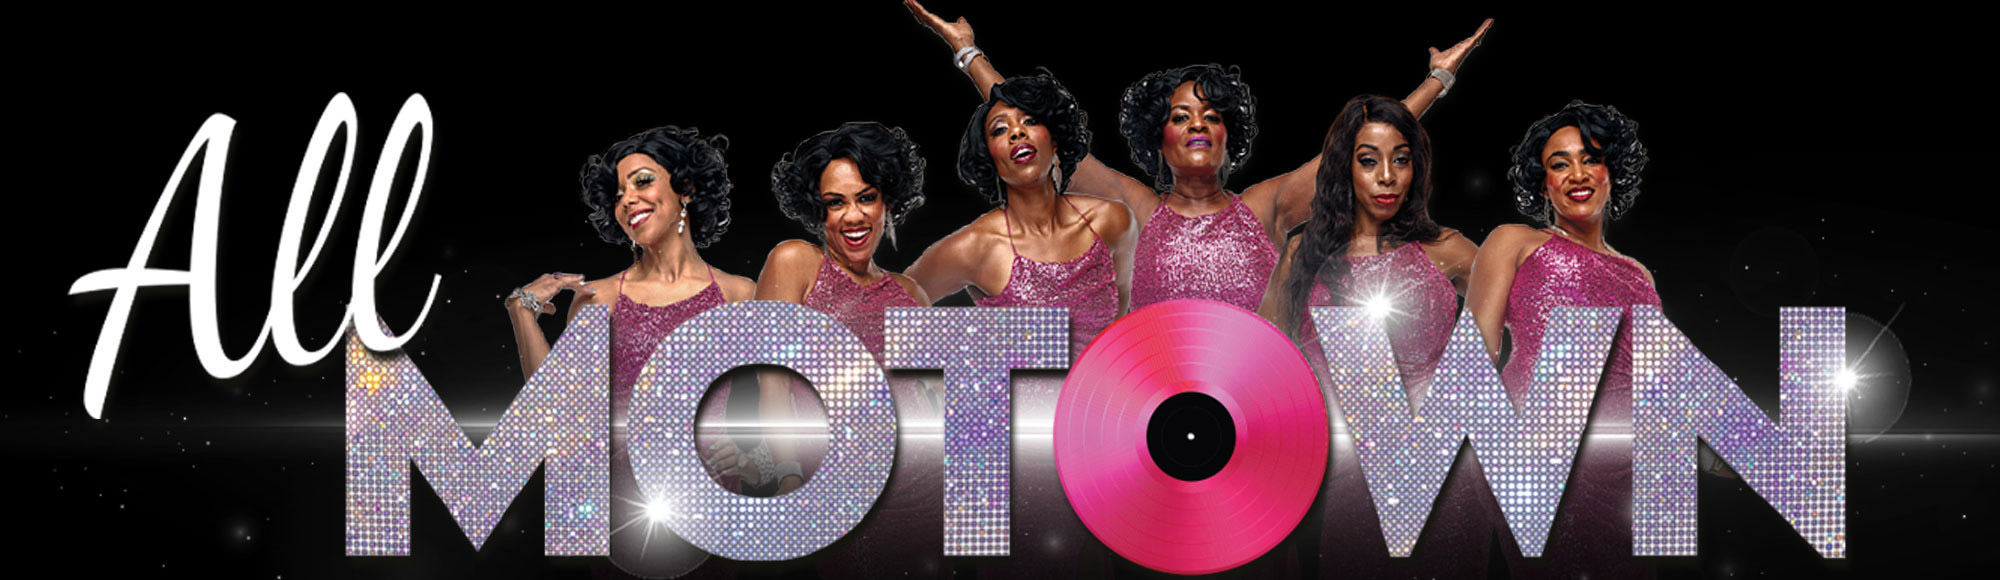 All Motown Show Las Vegas: Tickets & Reviews | Vegas.com